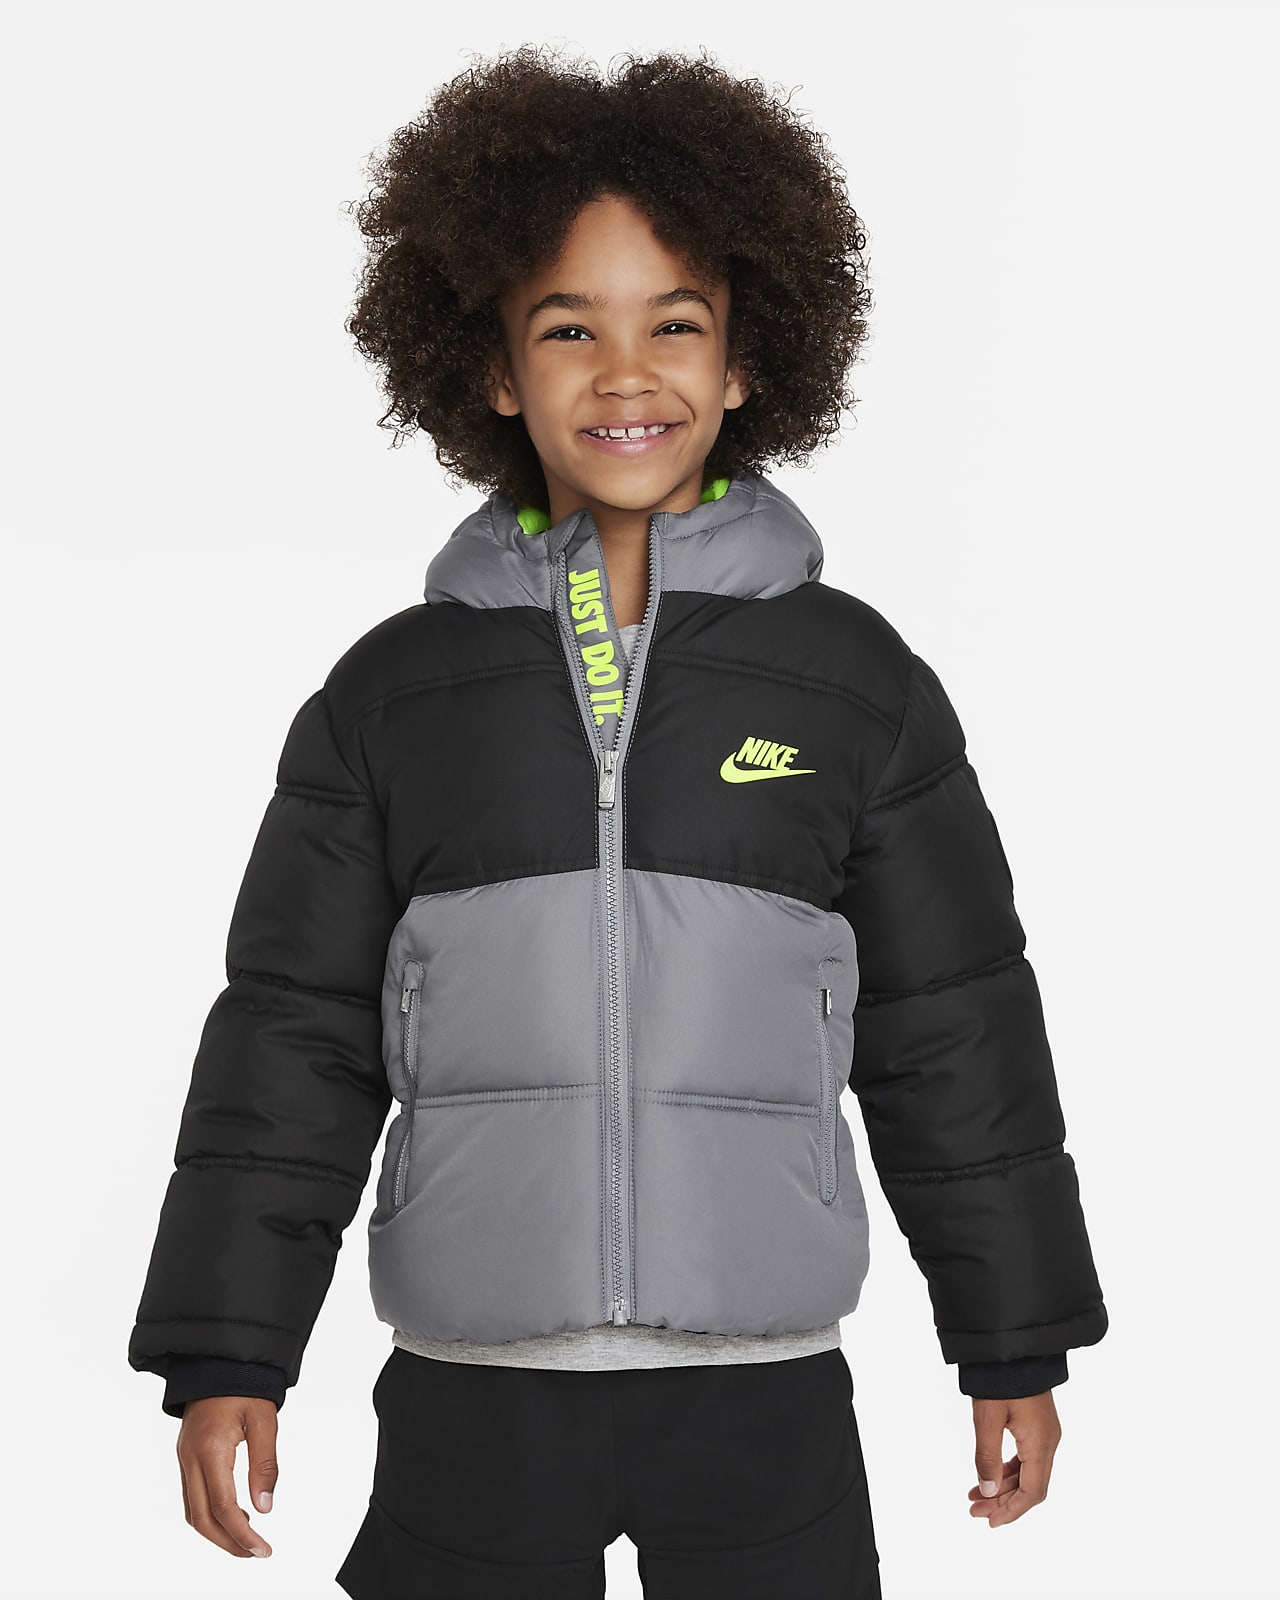 Nike Colorblock Puffer Little Kids Jacket